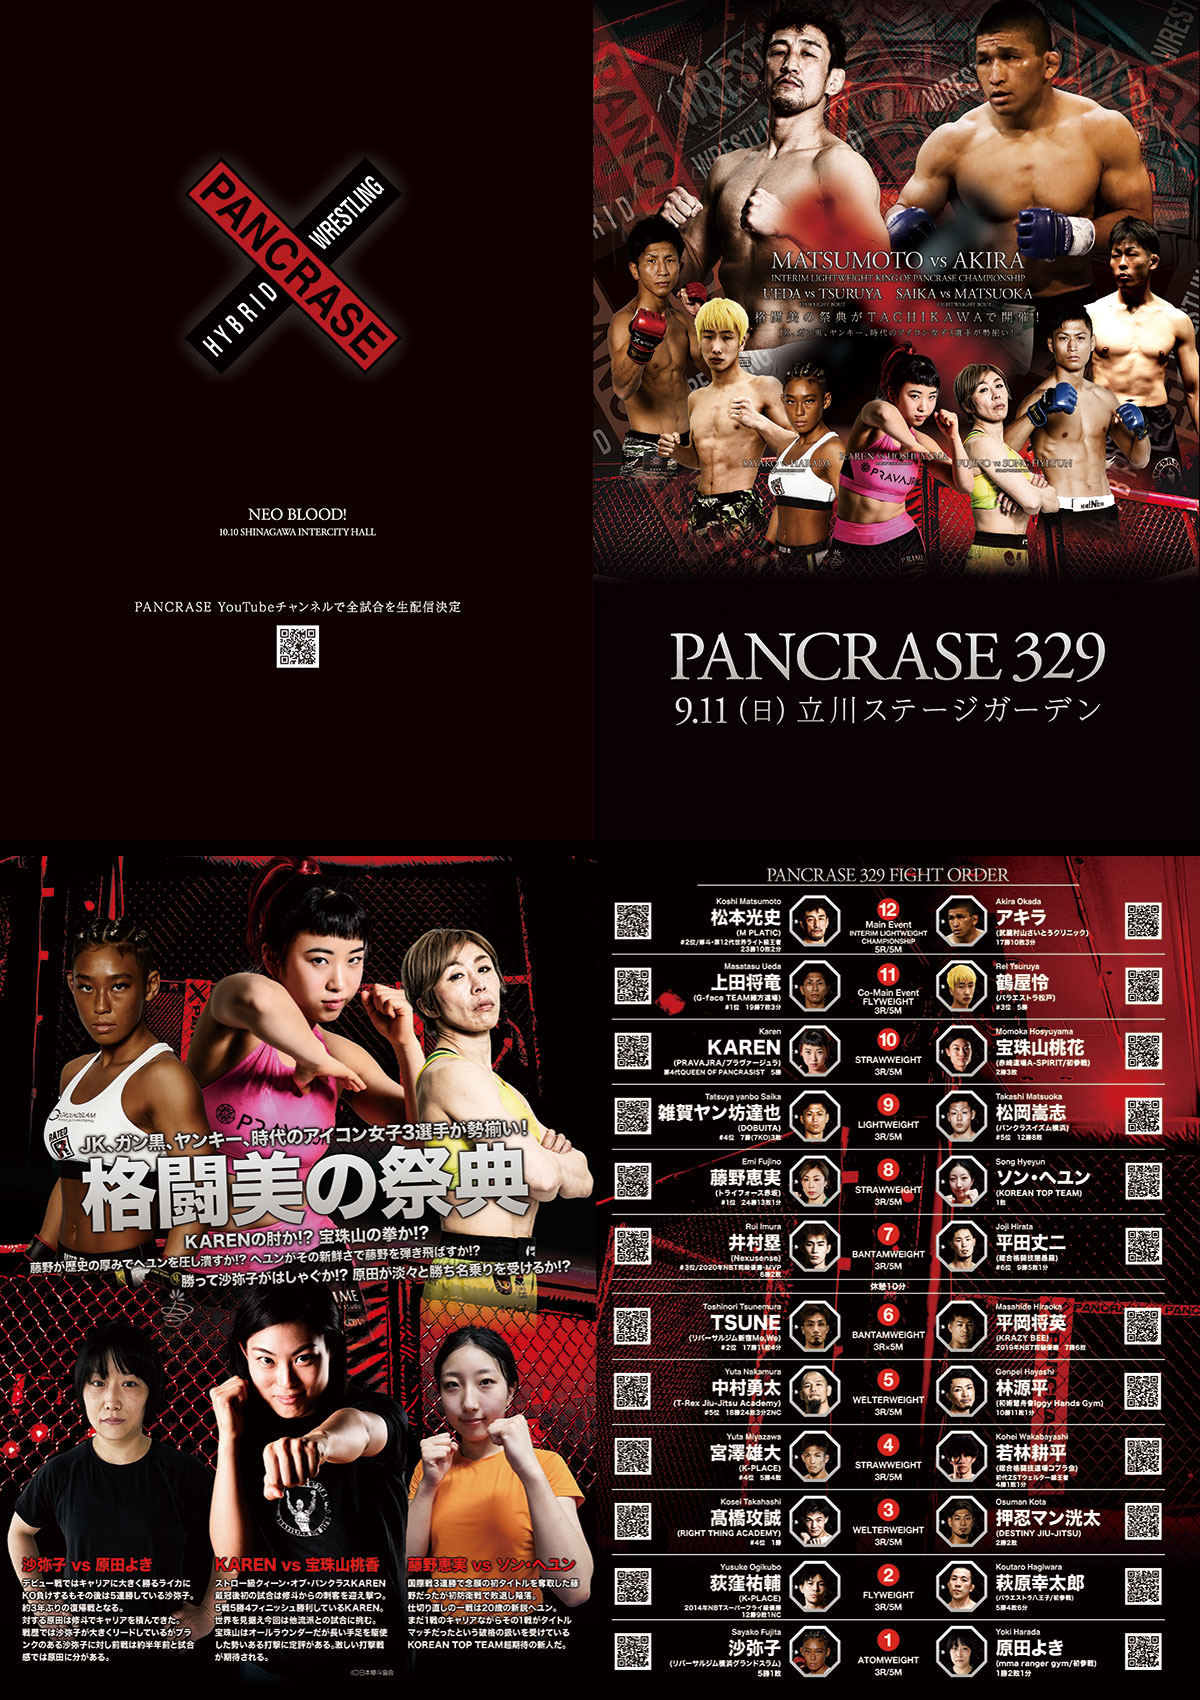 PANCRASE329パンフレット